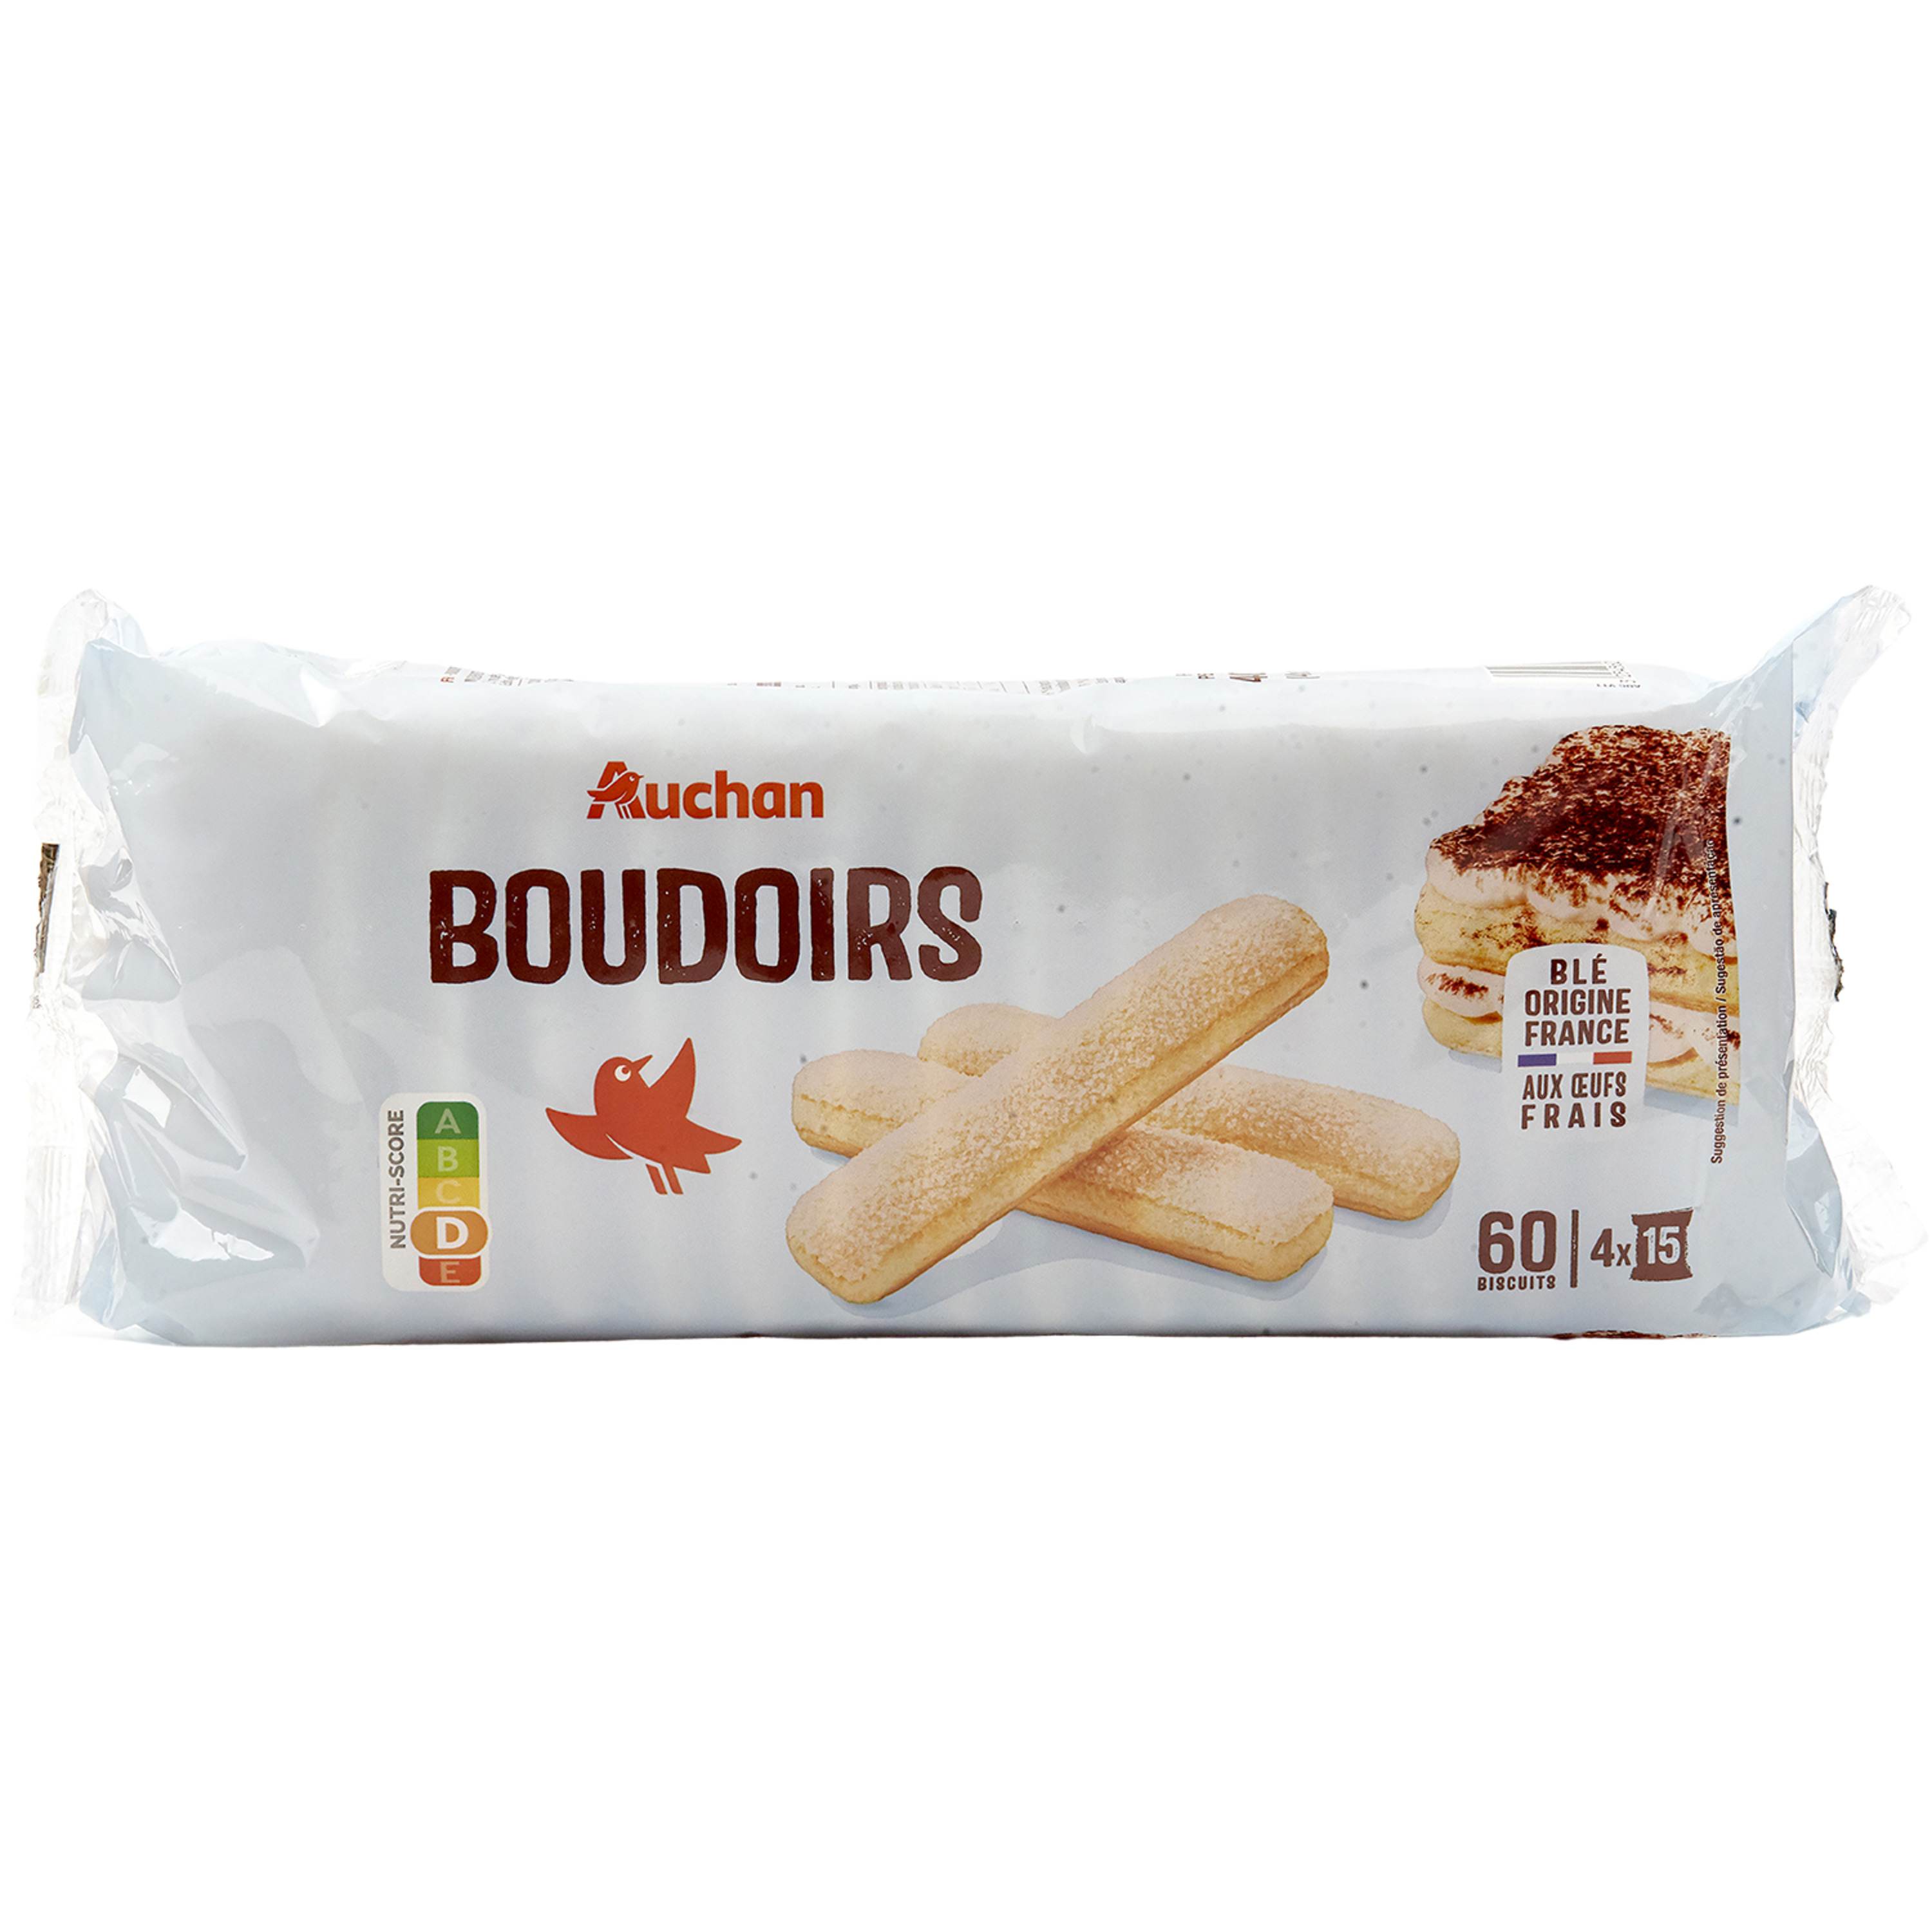 LU Biscuits thé nature sachets fraîcheur 4x12 biscuits 350g pas cher 